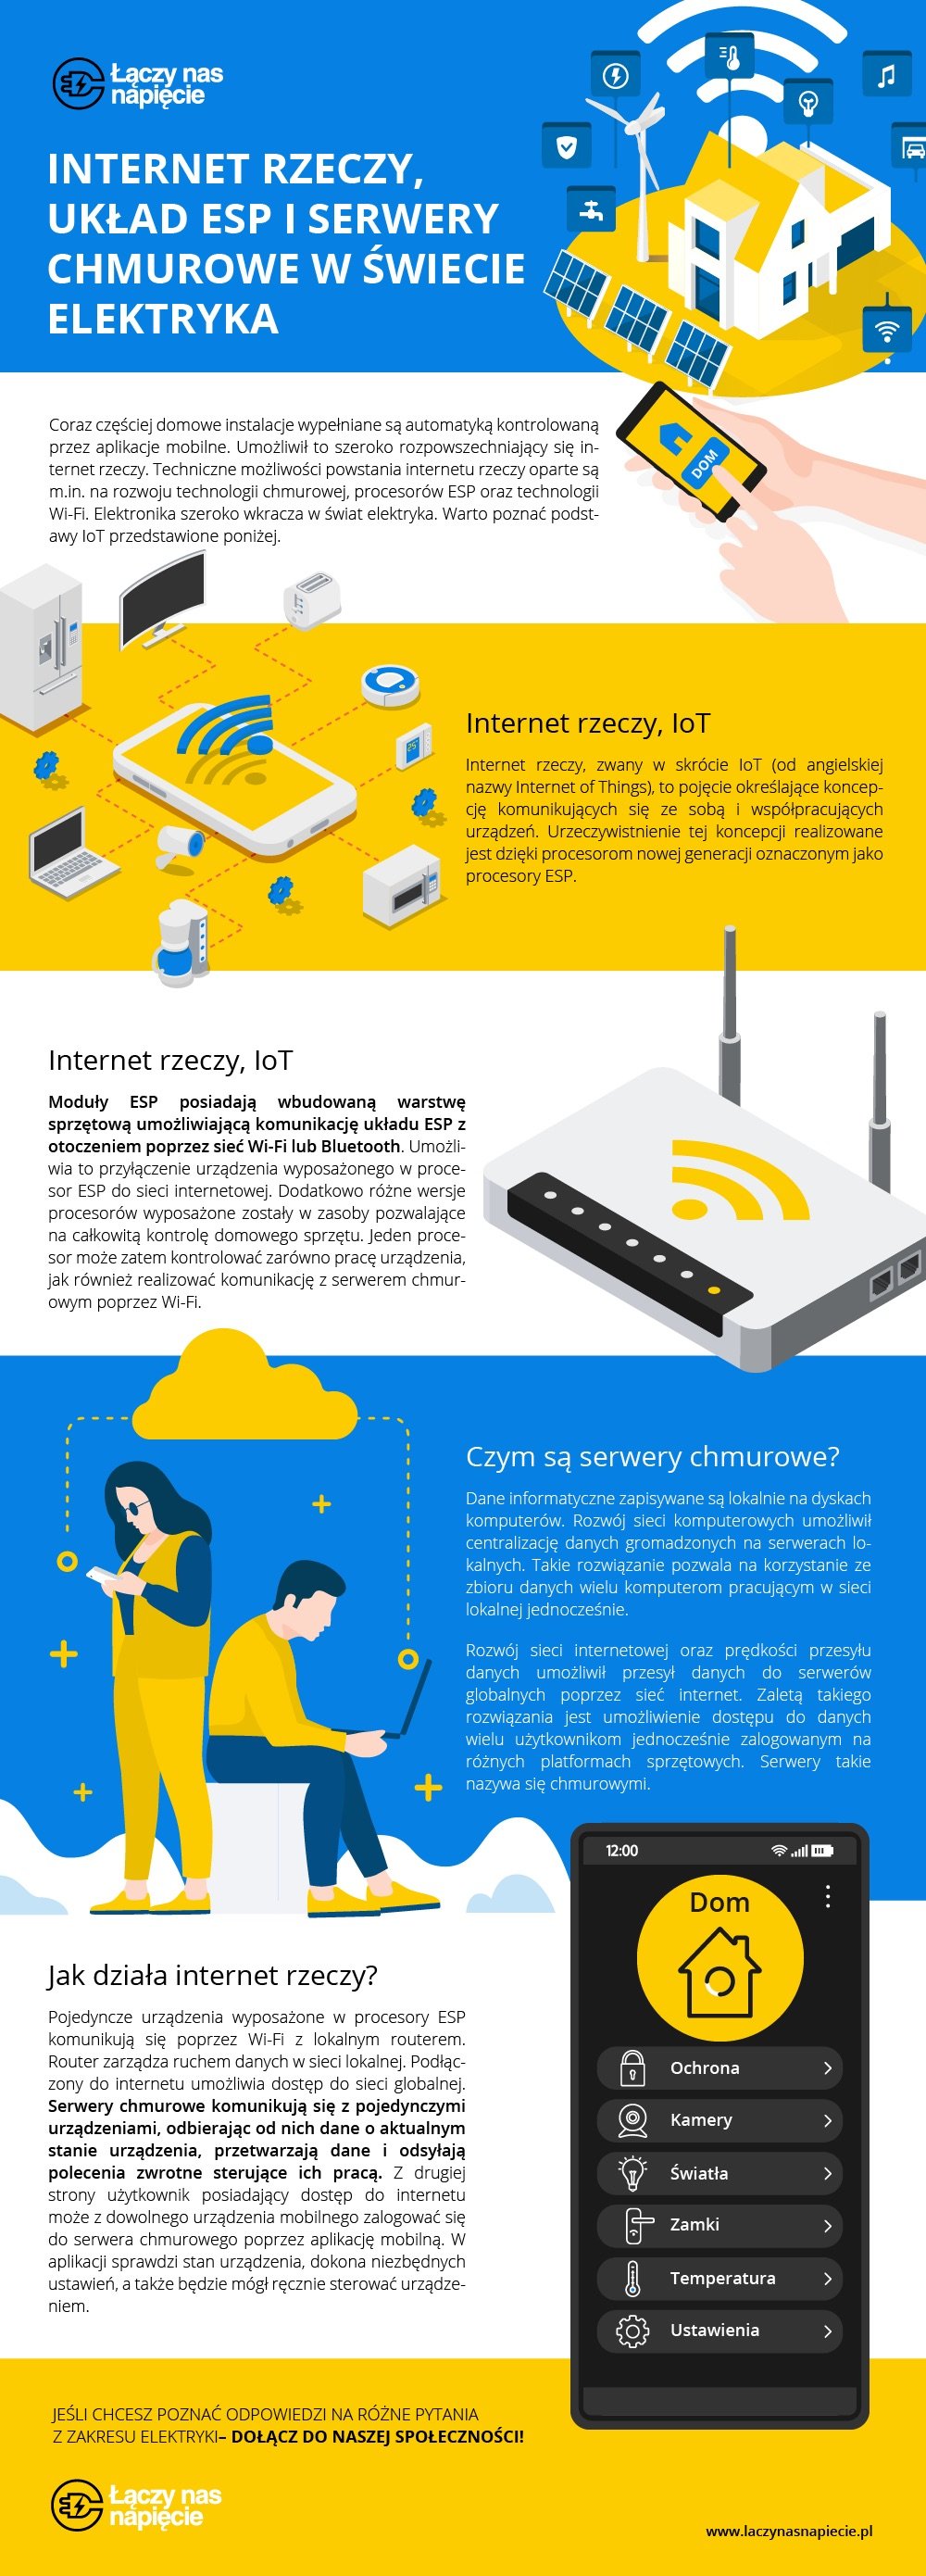 Internet rzeczy, układ ESP i serwery chmurowe w świecie elektryka [infografika]